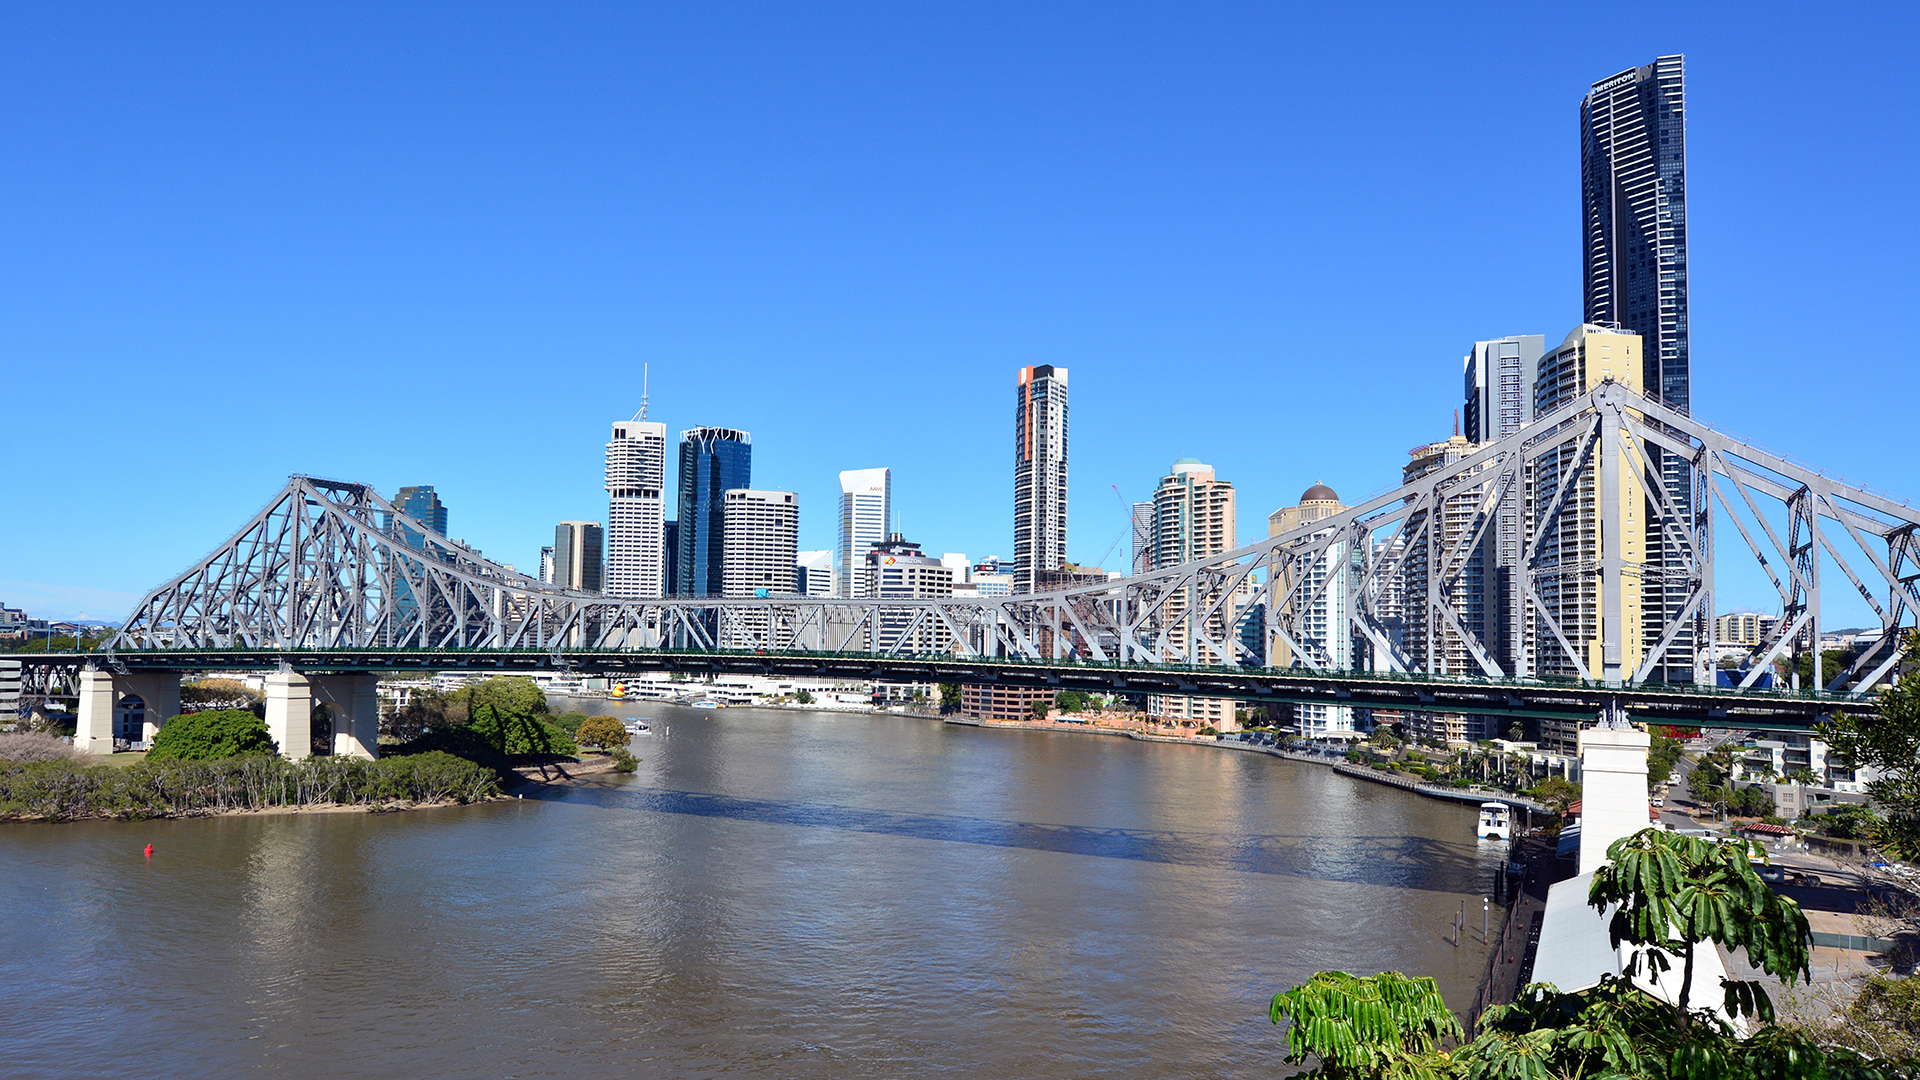 Stadtansicht von Brisbane mit Story Bridge im Vordergrund | picture alliance / Newscom